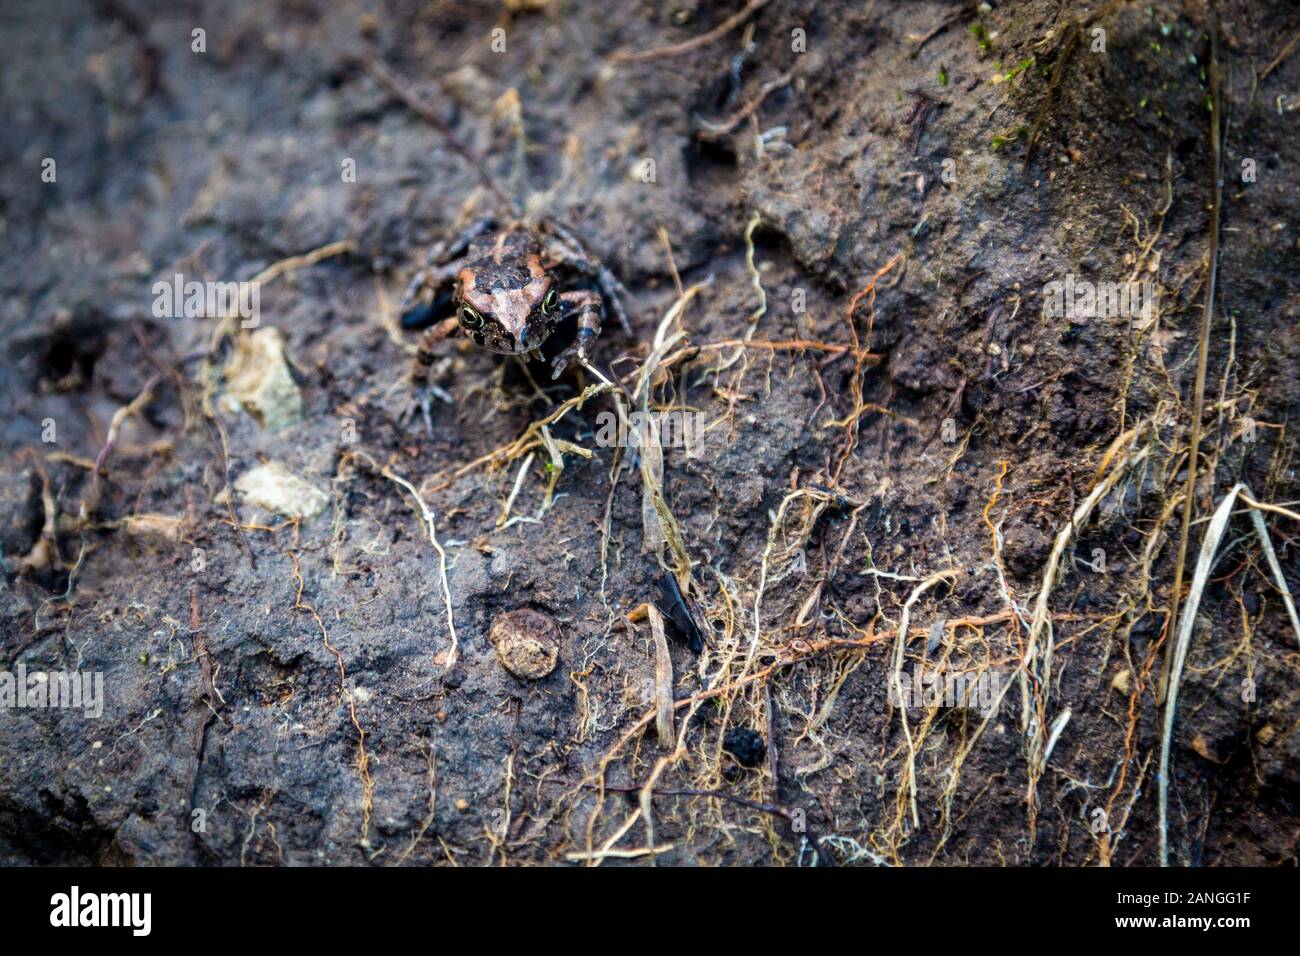 Une petite grenouille bien camouflé avec un motif brun-noir est assis sur le sol boueux, Afrique du Sud Banque D'Images